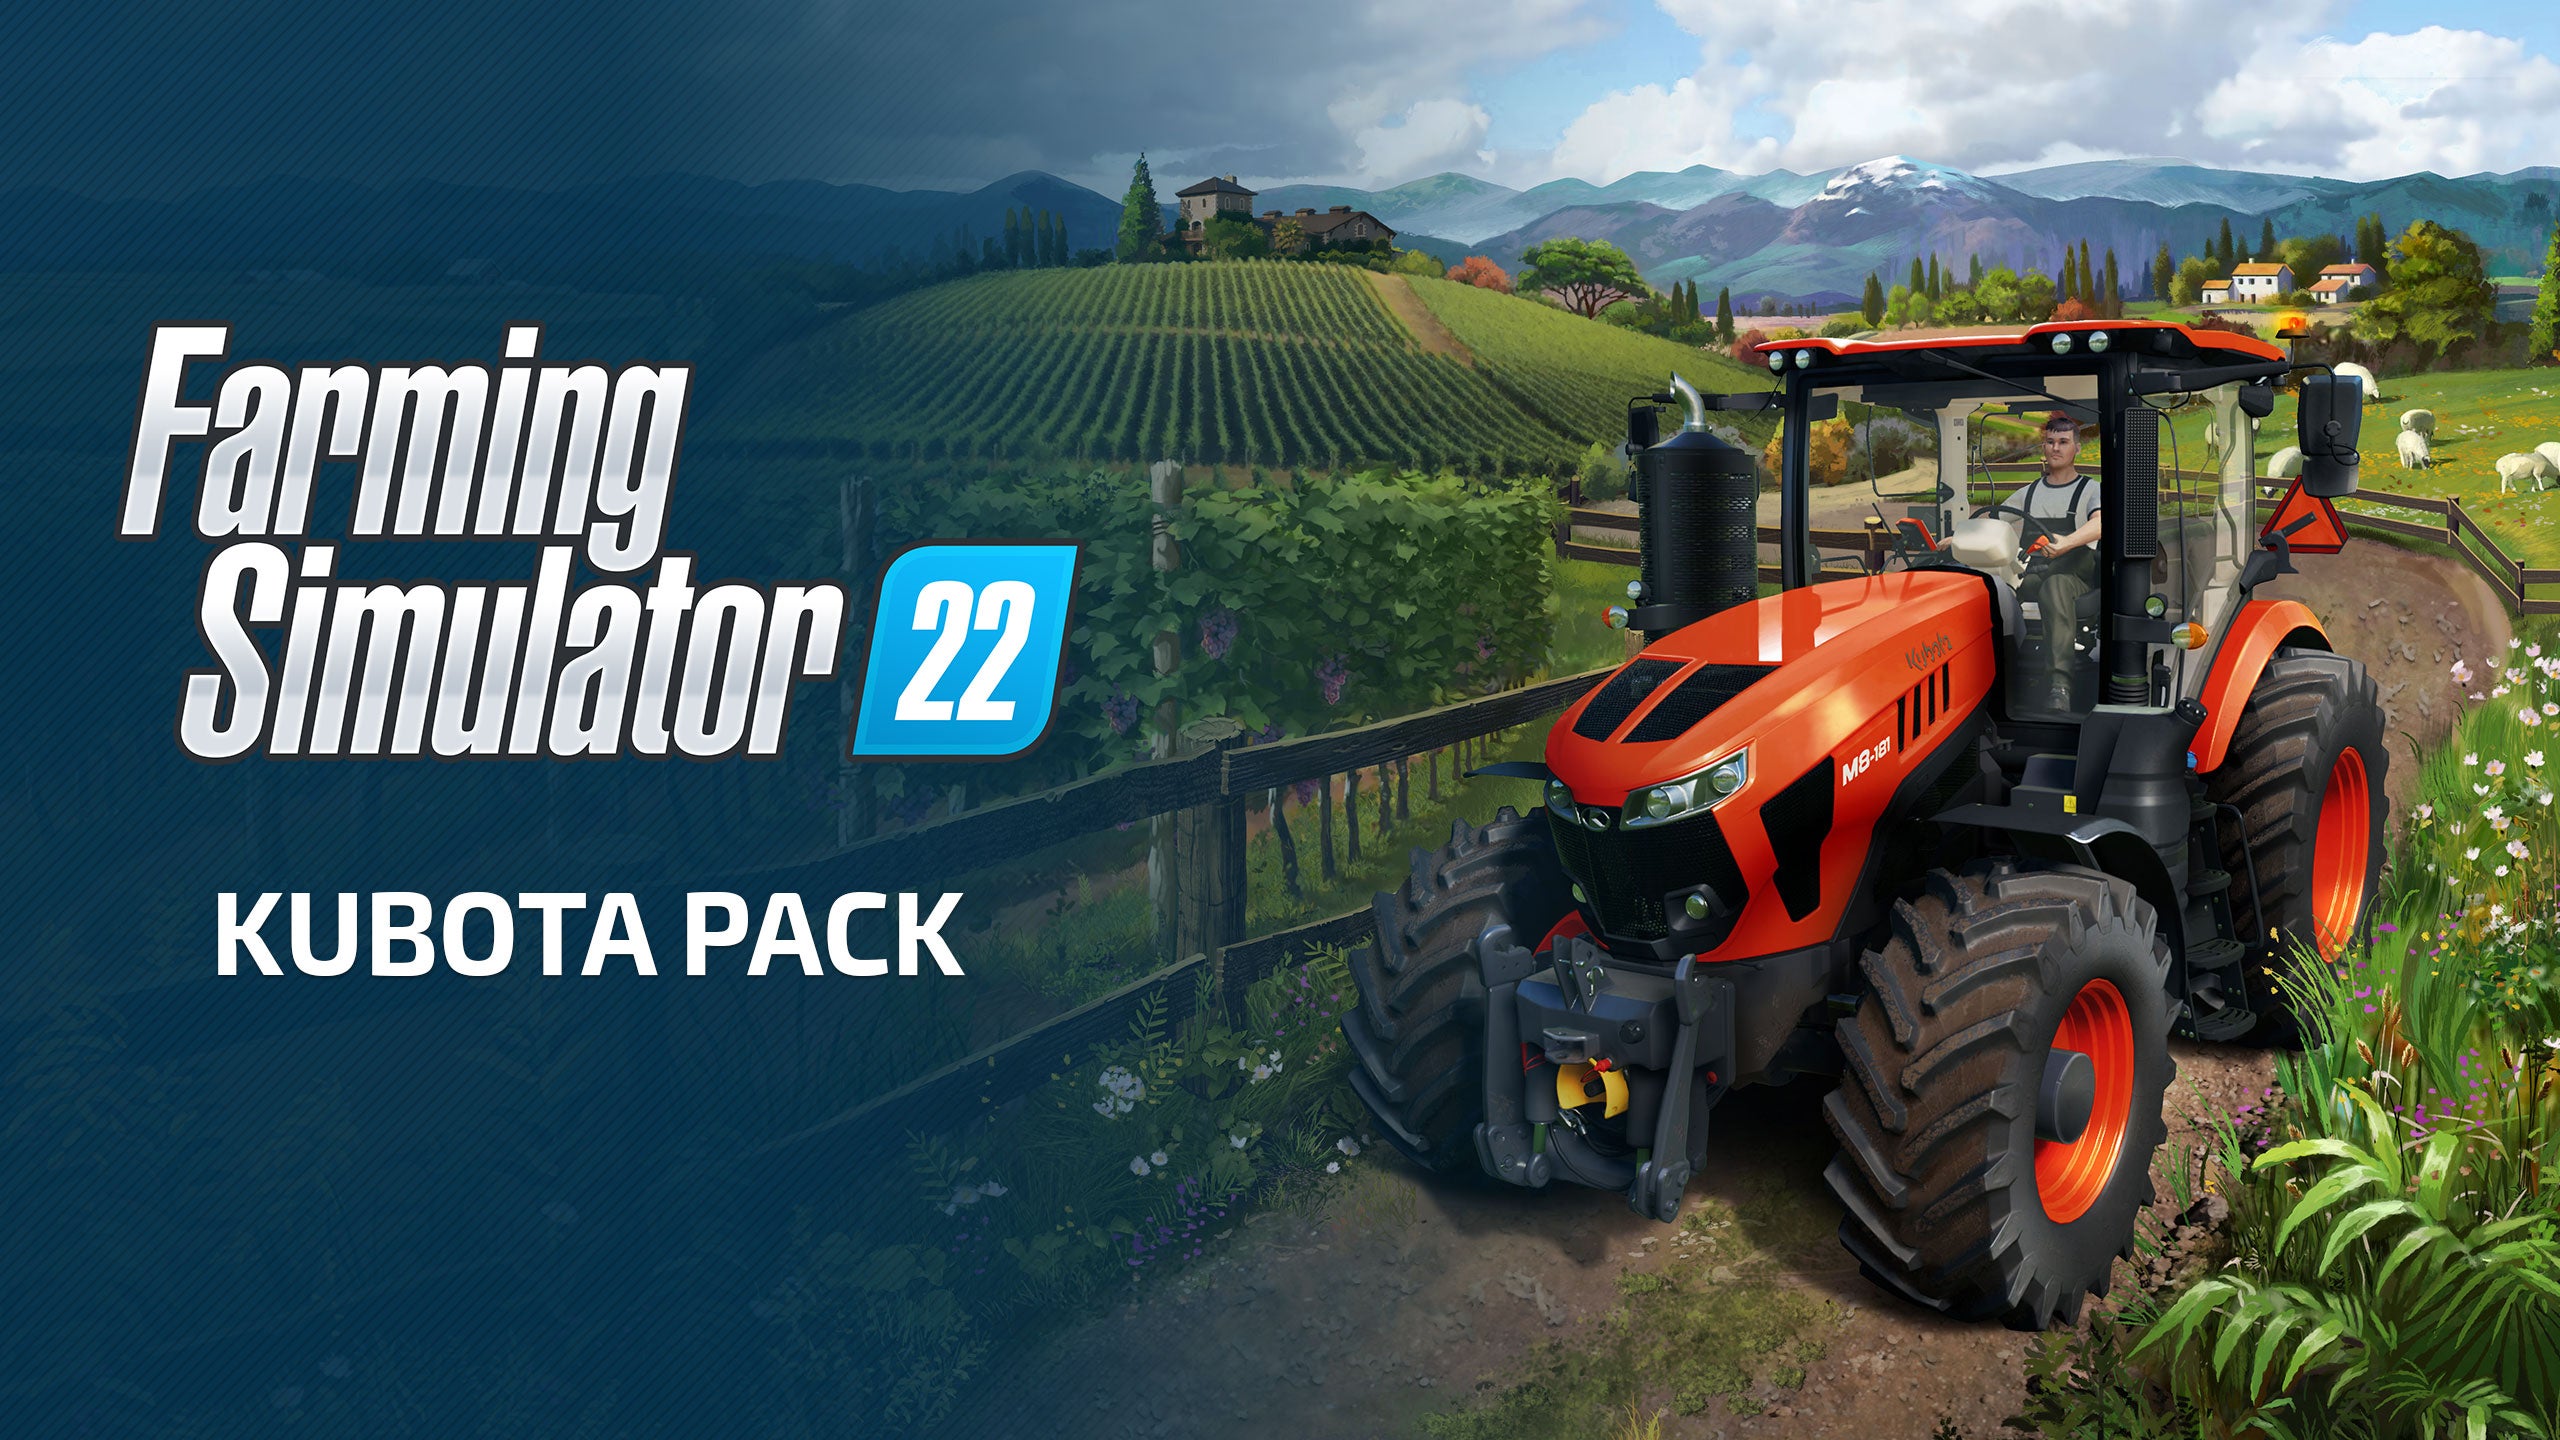 Image for Dosud největší traktor do herního farmaření v Kubota Pack